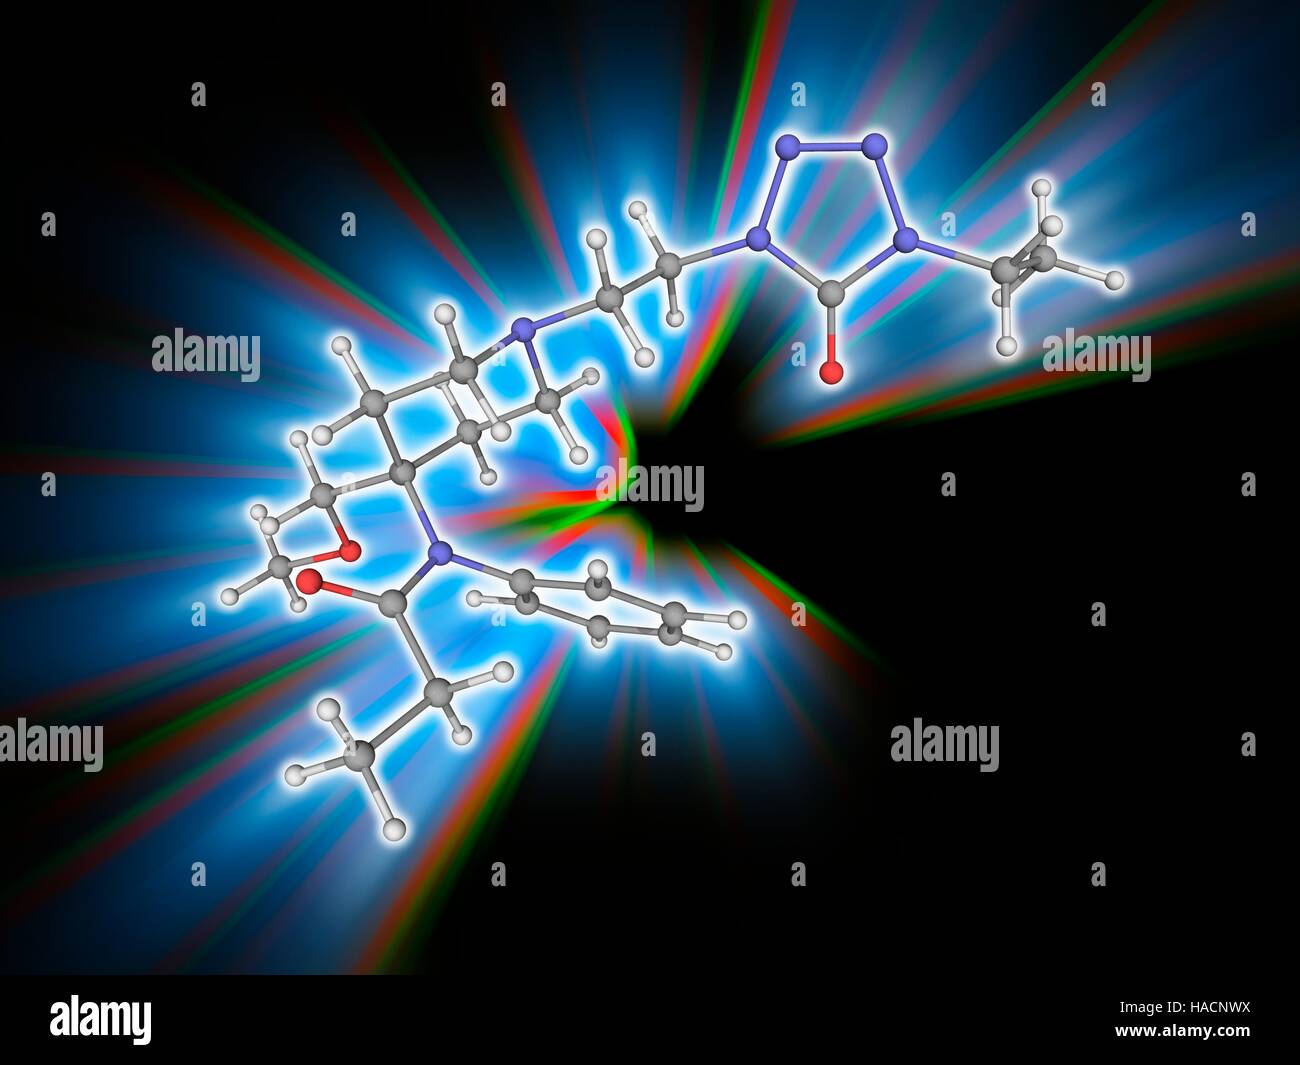 Alfentanil. Molekulares Modell des synthetischen Analgetikum Alfentanil (C21. H32. N6. O3) für Anästhesie in der Chirurgie verwendet. Es gilt als ein Opioid (ein Medikament, ähnlich wie die Opiate), beeinflussen die körpereigene opioid-Rezeptoren. Atome als Kugeln dargestellt werden und sind farblich gekennzeichnet: Kohlenstoff (grau), Wasserstoff (weiß), Stickstoff (blau) und Sauerstoff (rot). Abbildung. Stockfoto